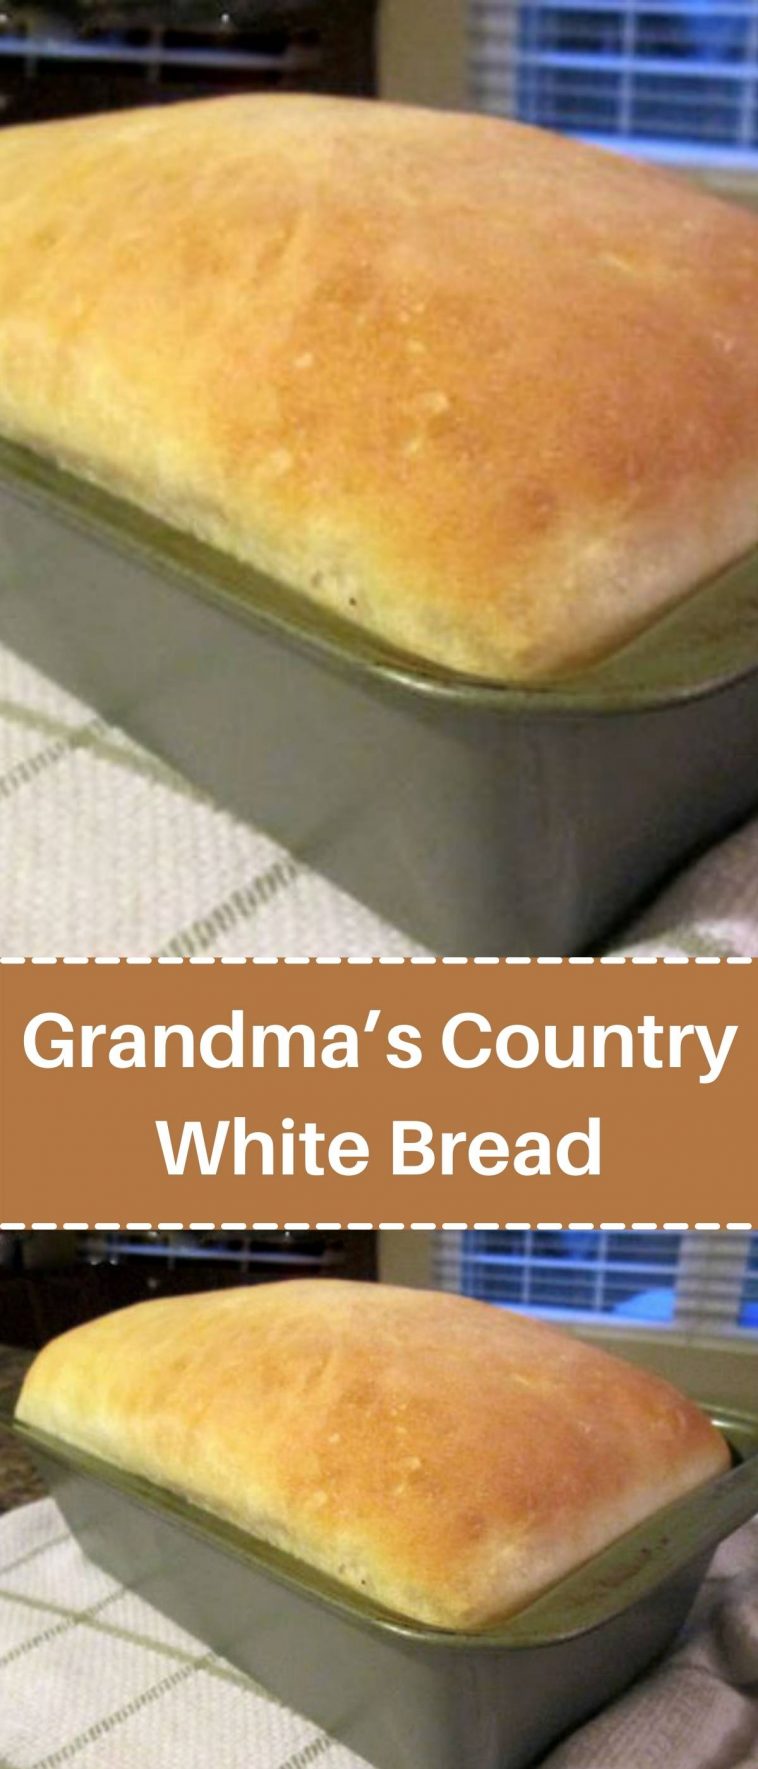 Grandma’s Country White Bread